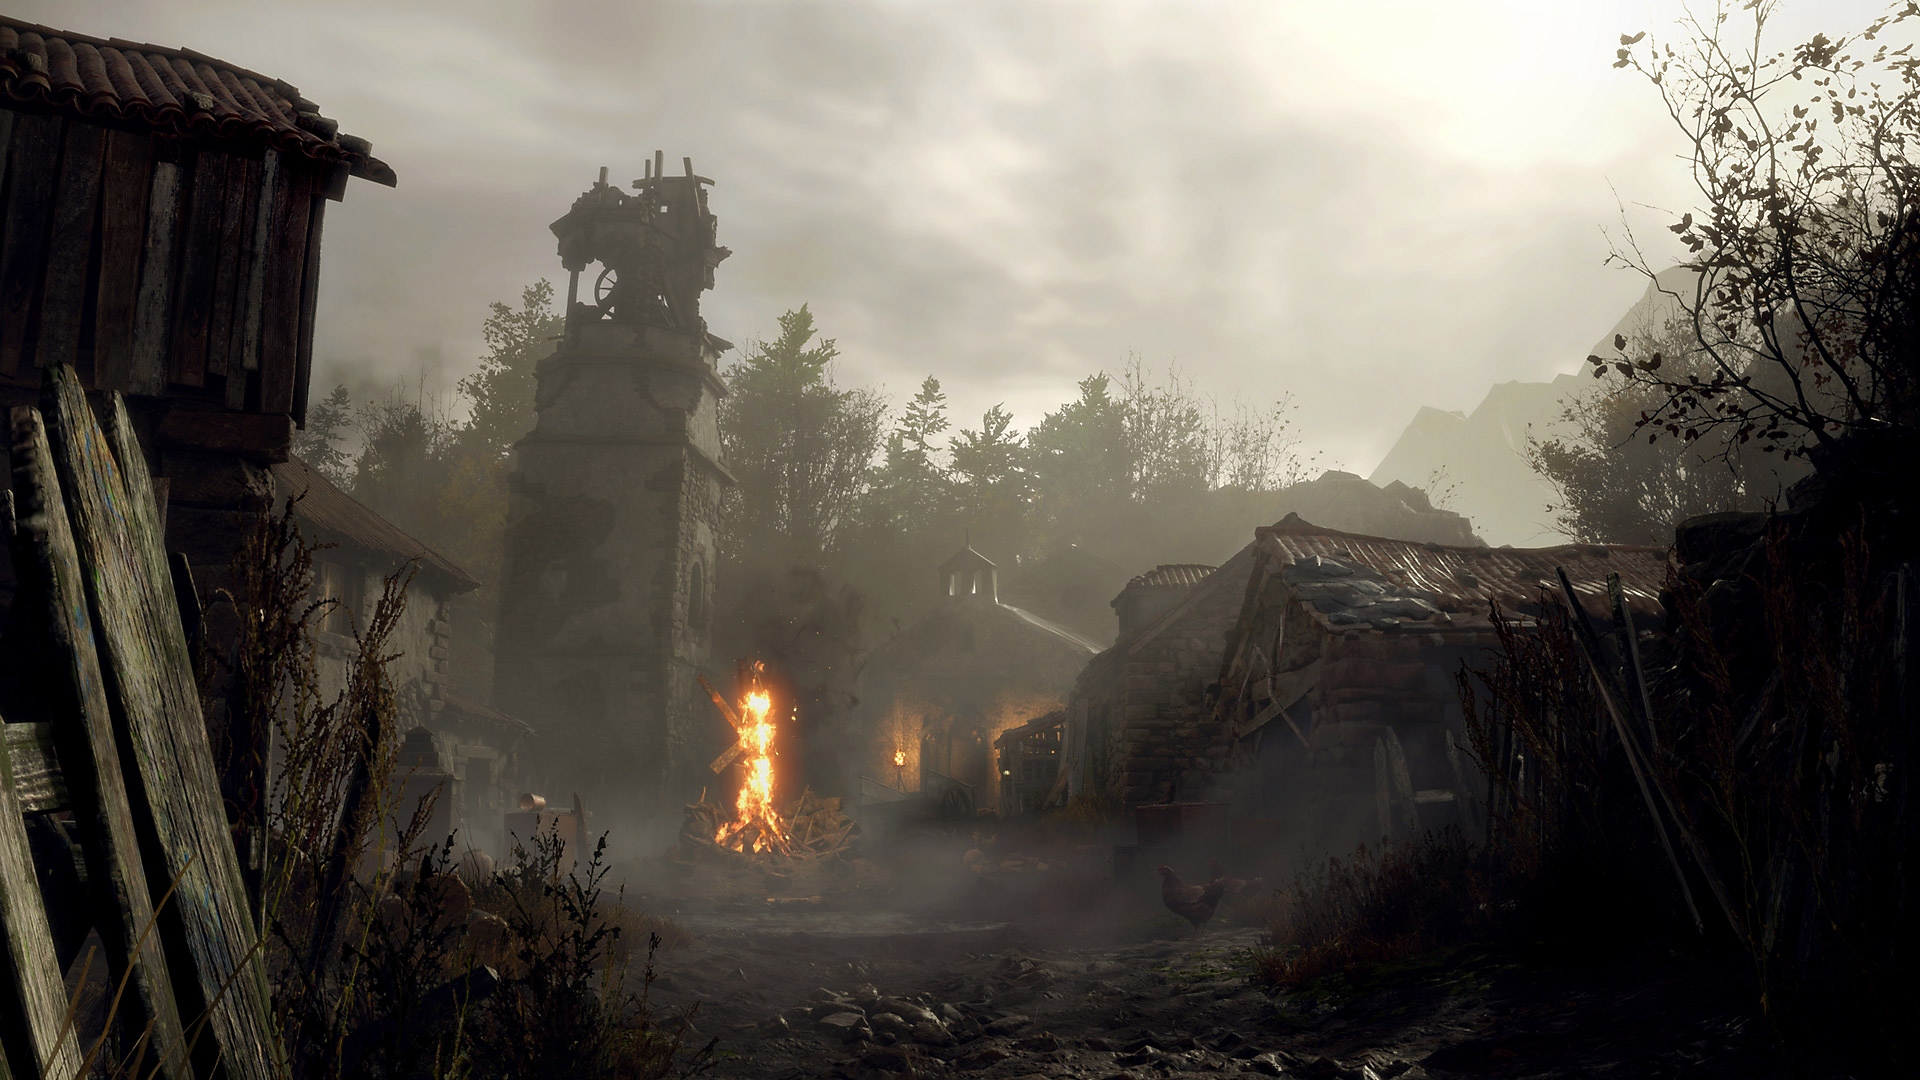 Resident Evil 4-skærmbillede med et brændende krucifiks i en støvet, forfalden landsby.